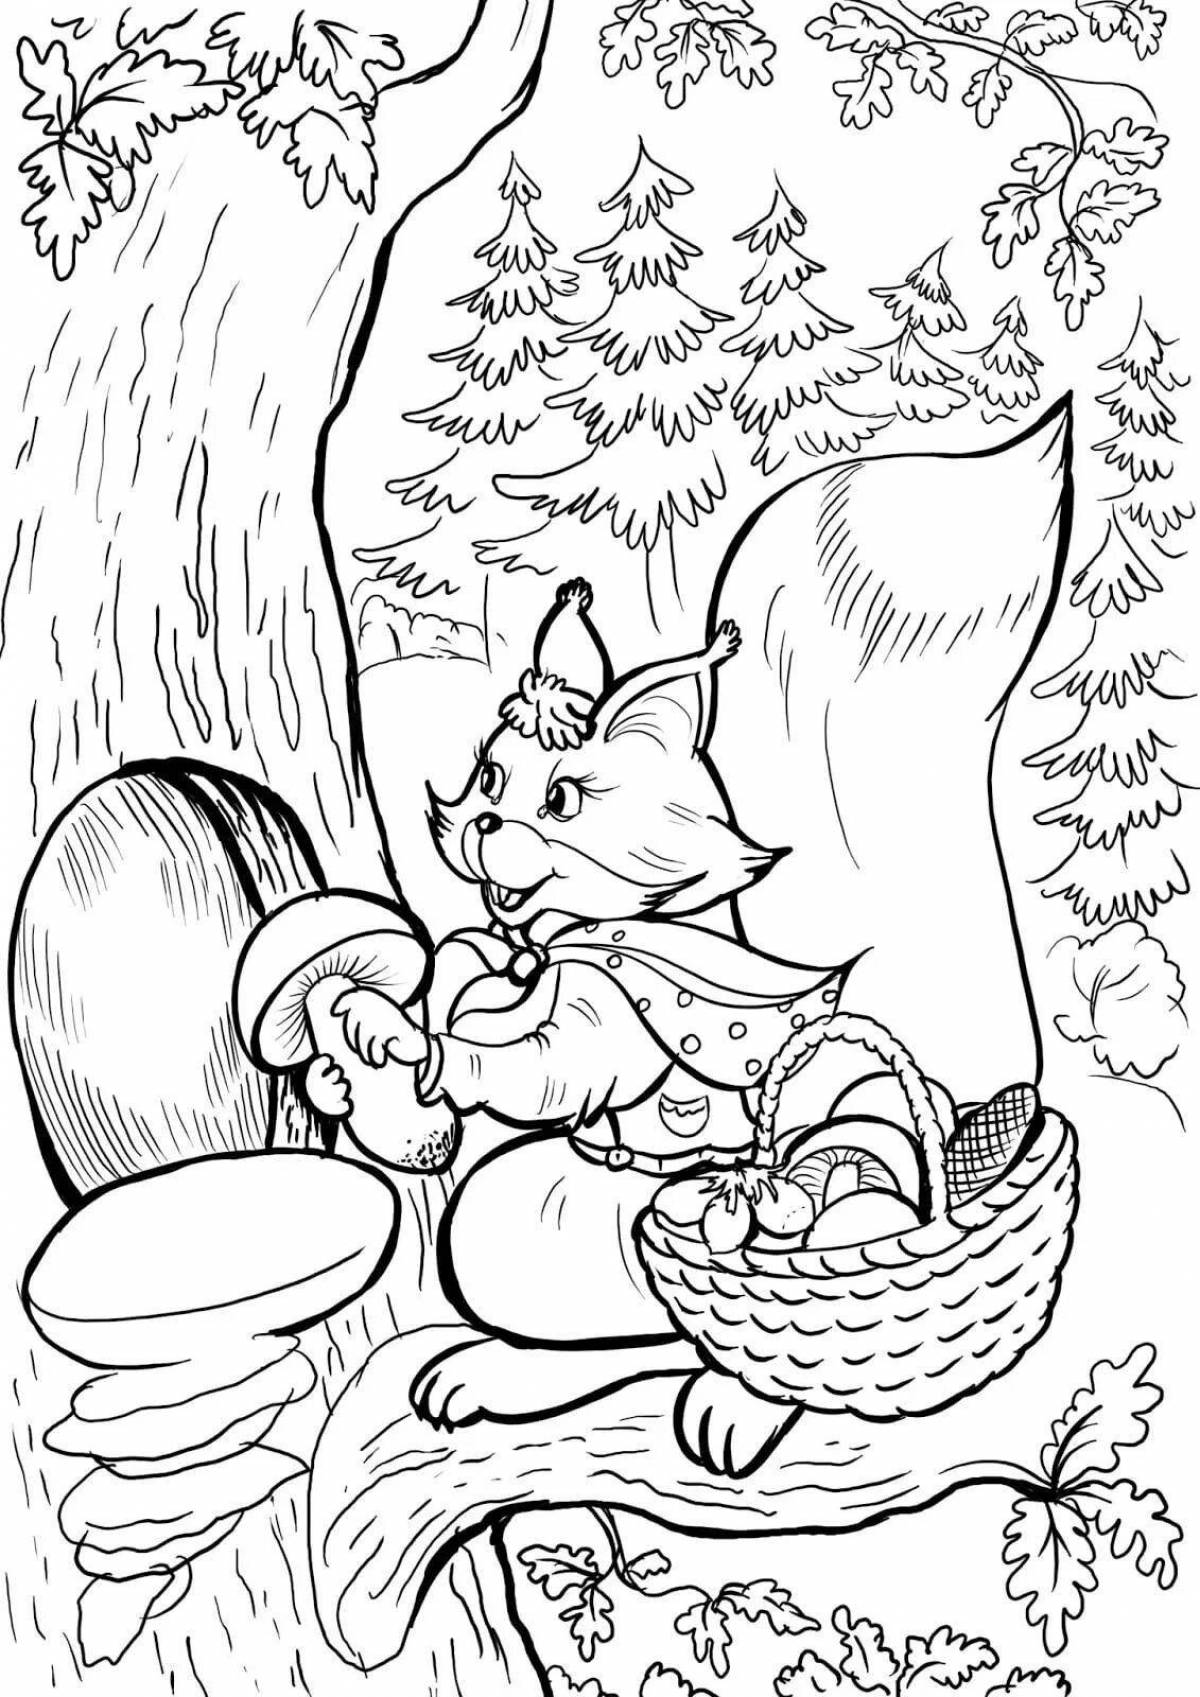 Cozy winter squirrel coloring book